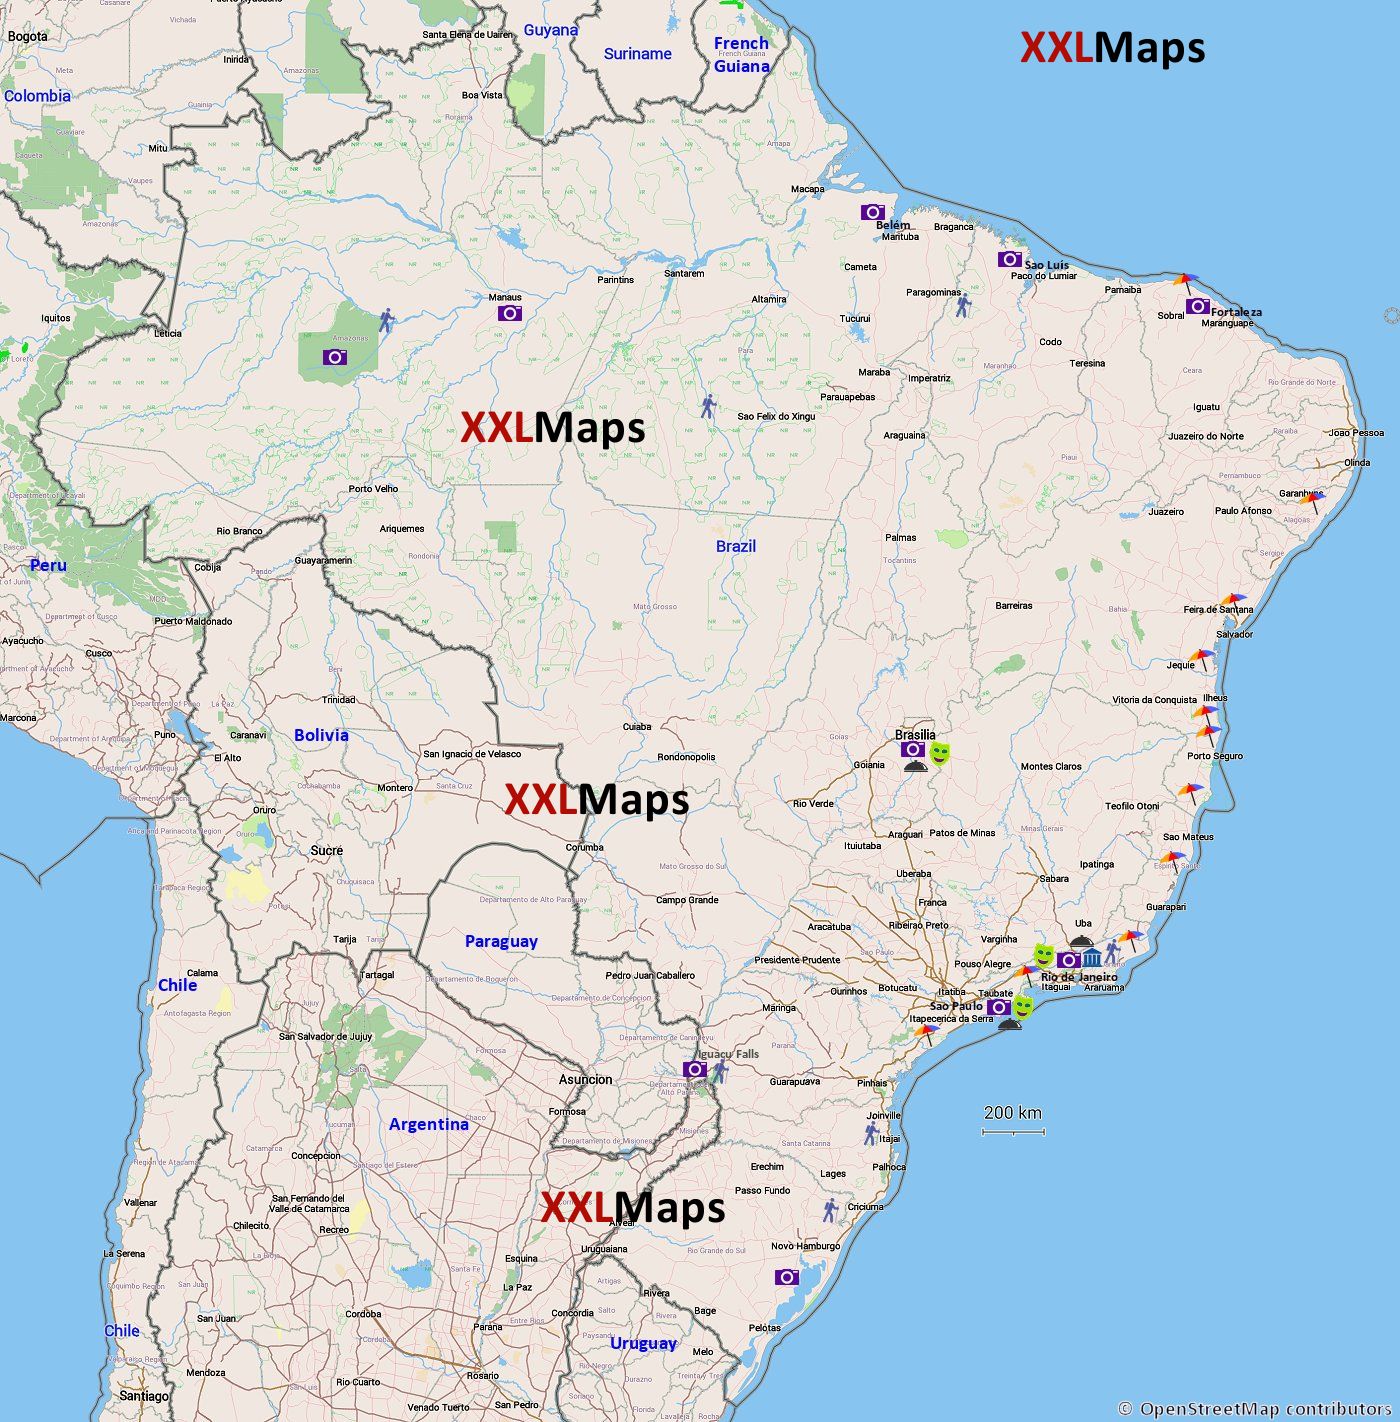 Mappa turistica di Brasile